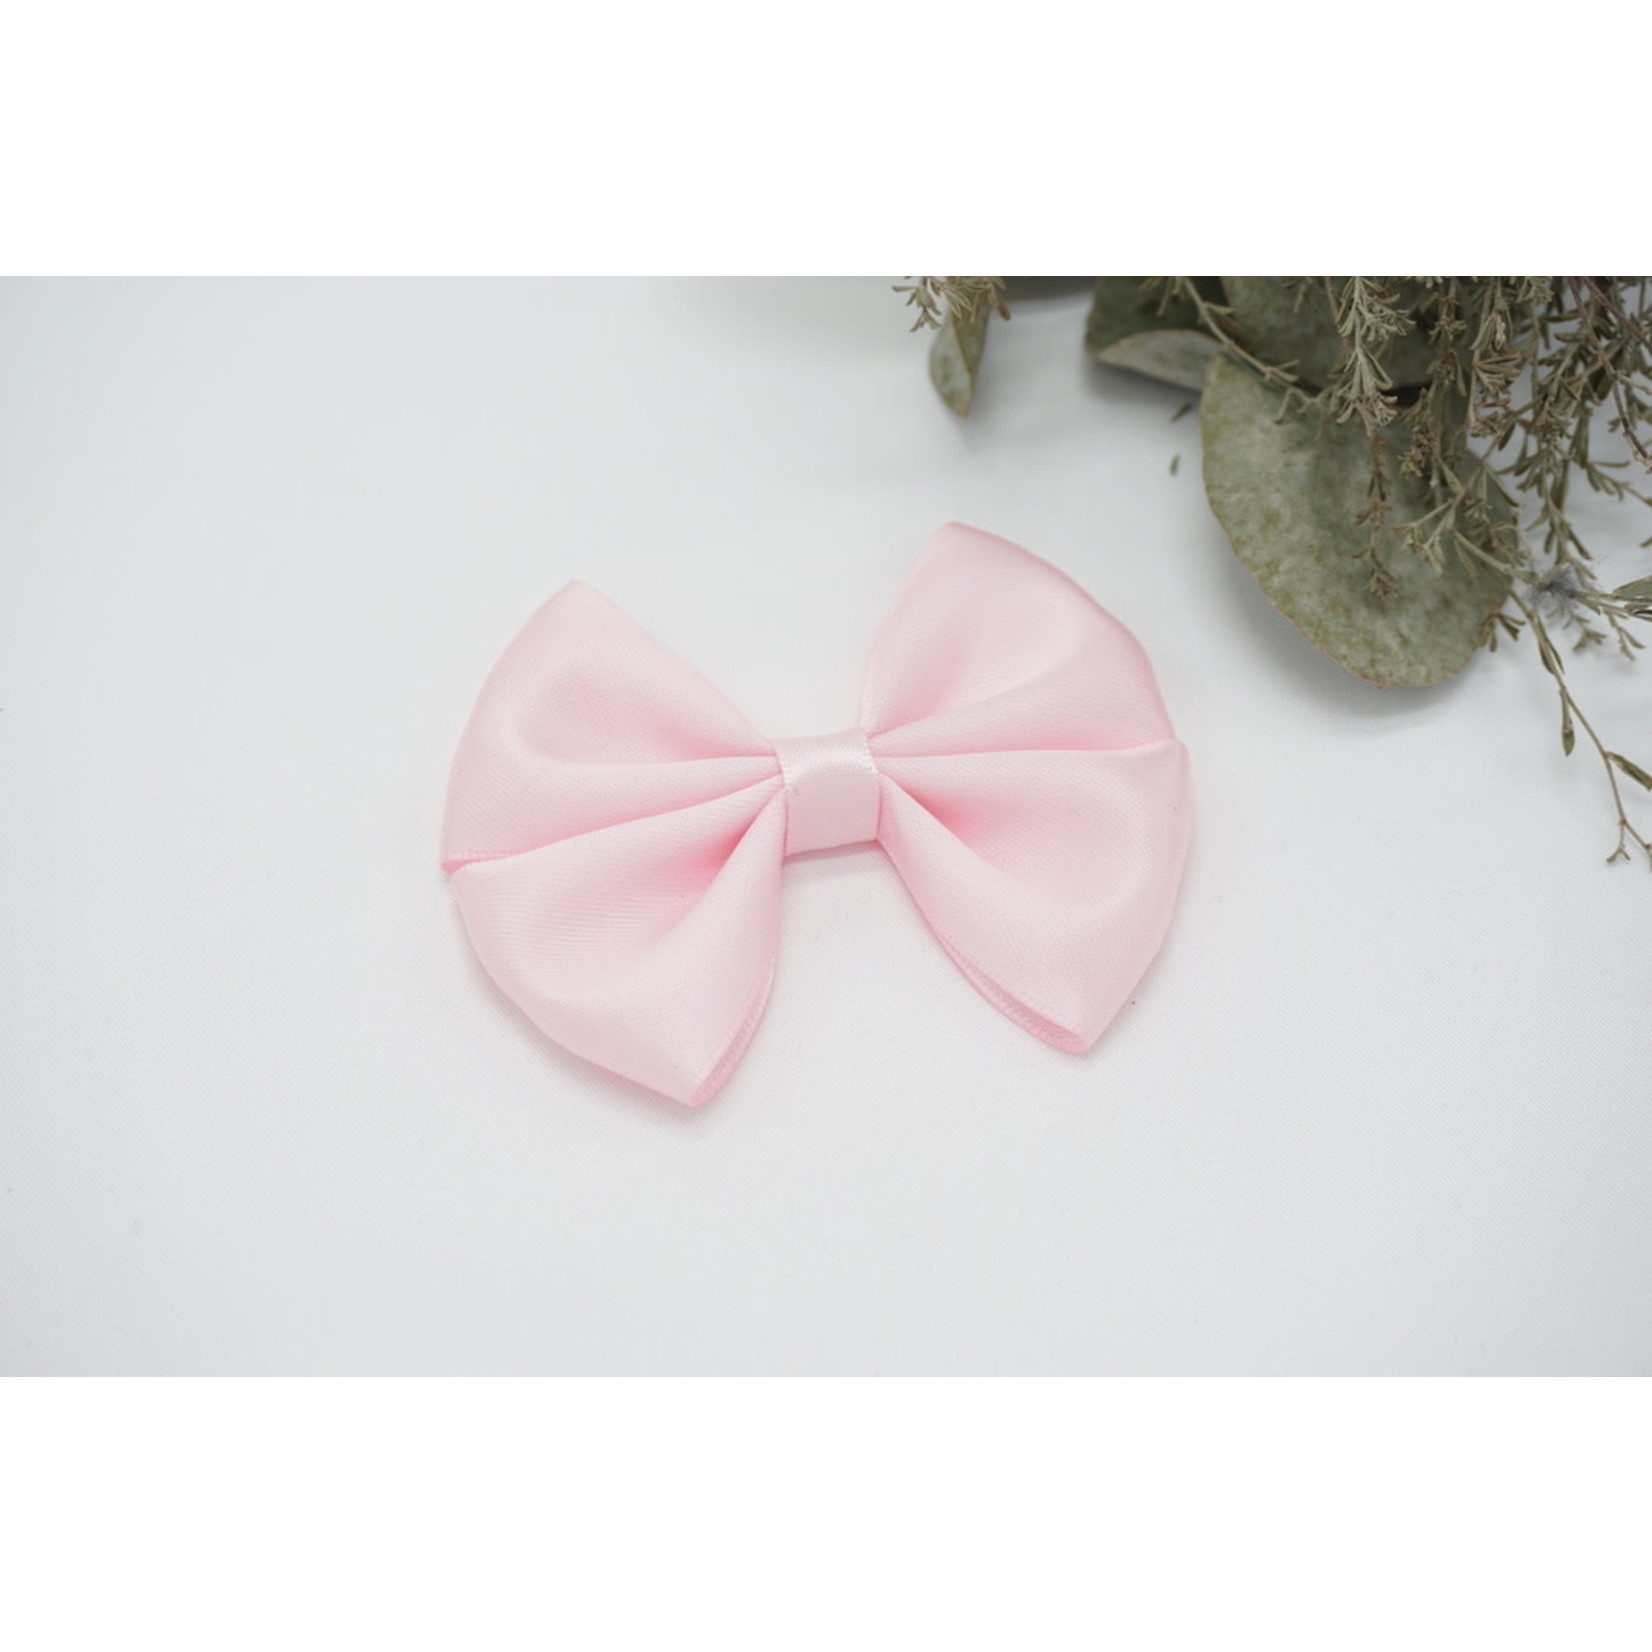 Petite Zara Copy of Satin Bow - Princess Pink 1